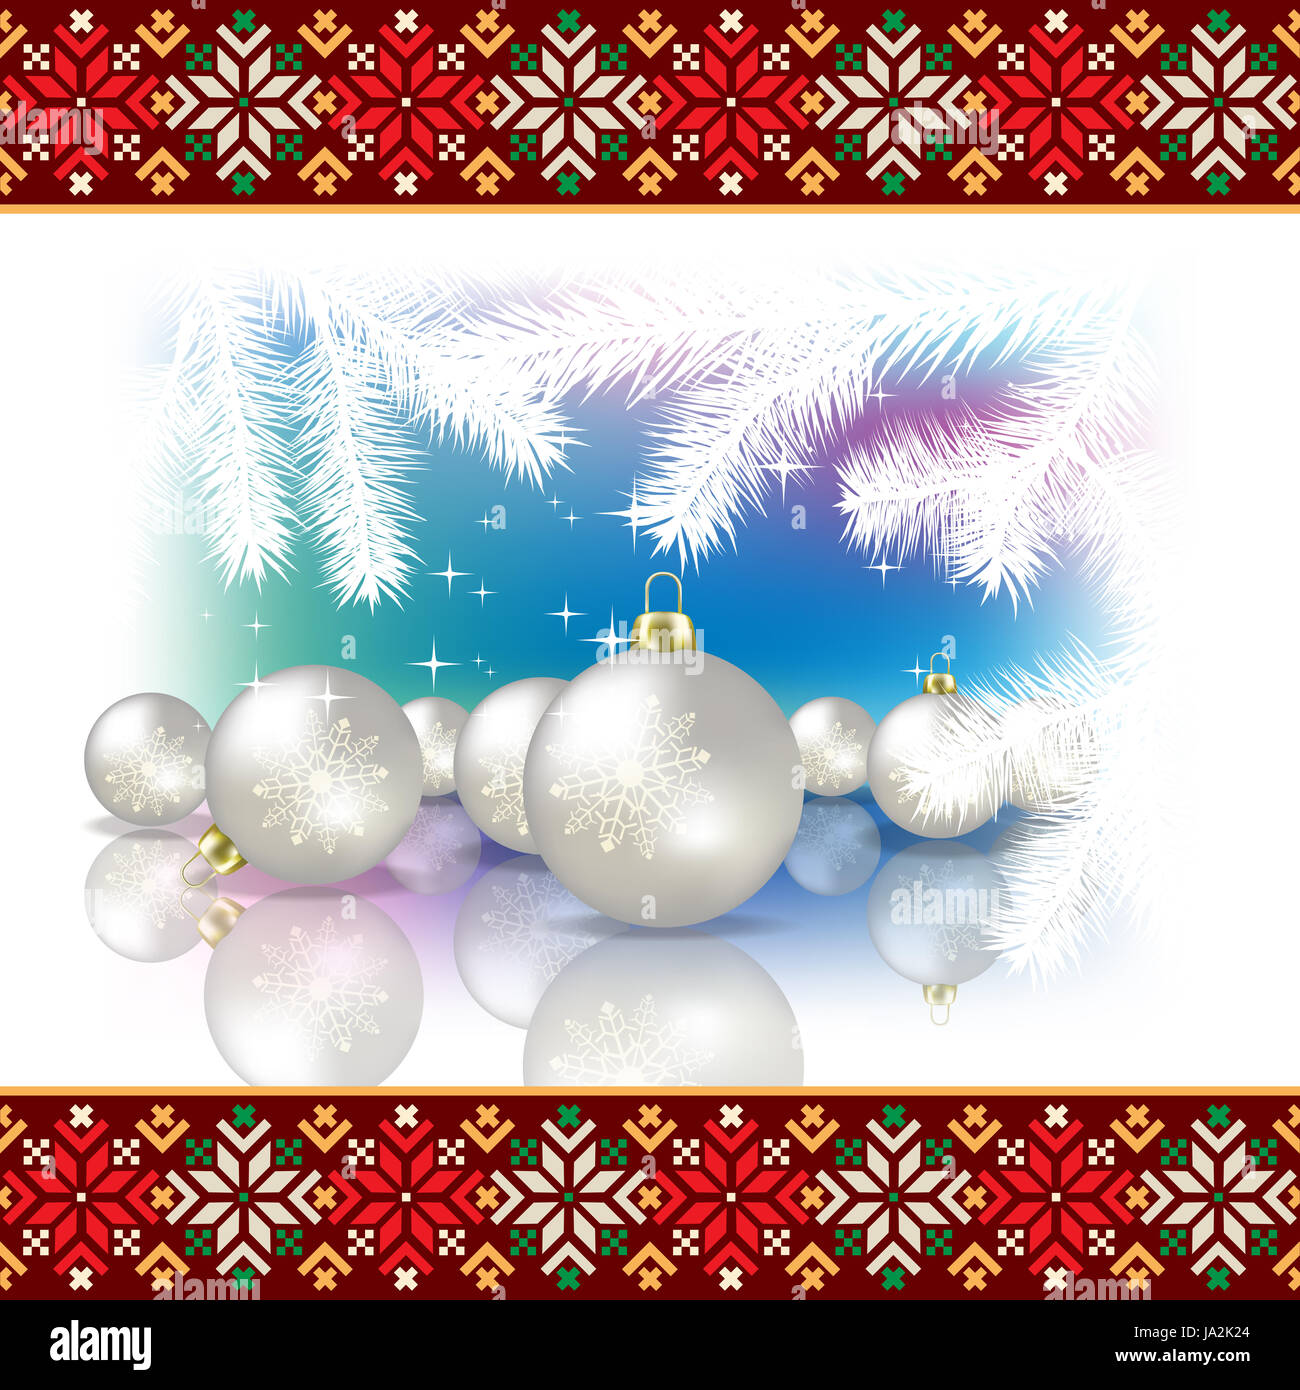 tree, sunrise, party, celebration, decoration, national, christmas, estonia, Stock Photo